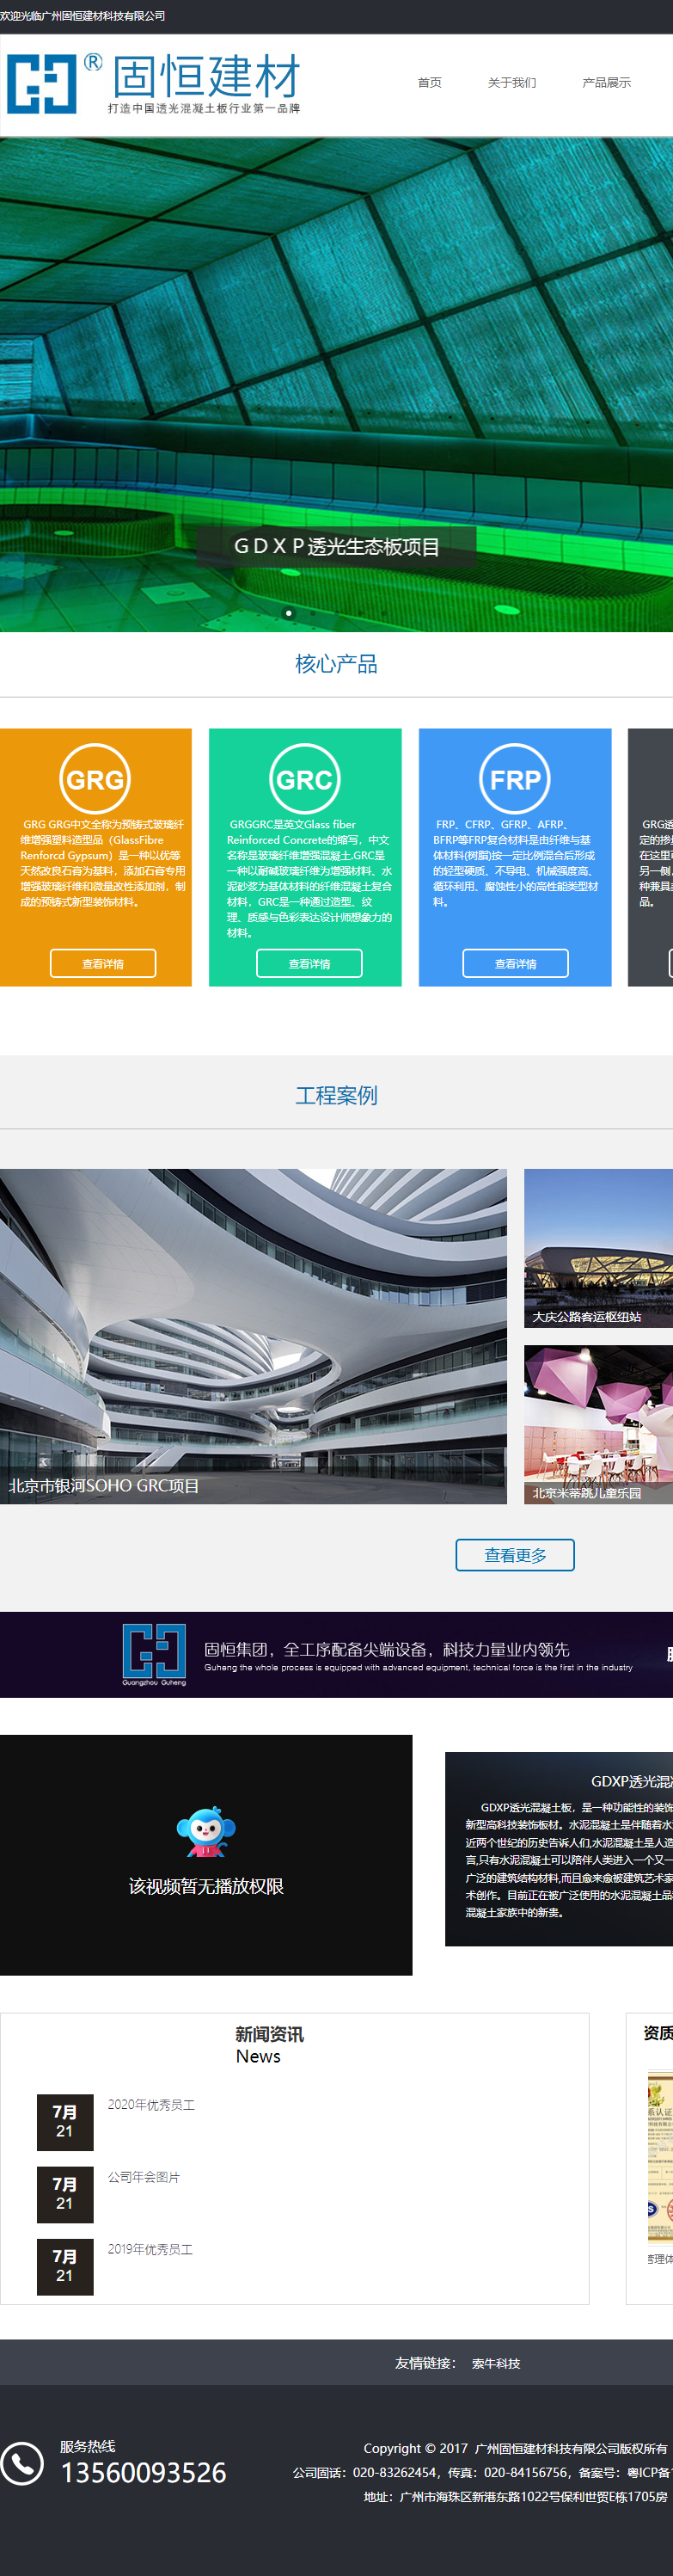 广州固恒建材科技有限公司网站案例